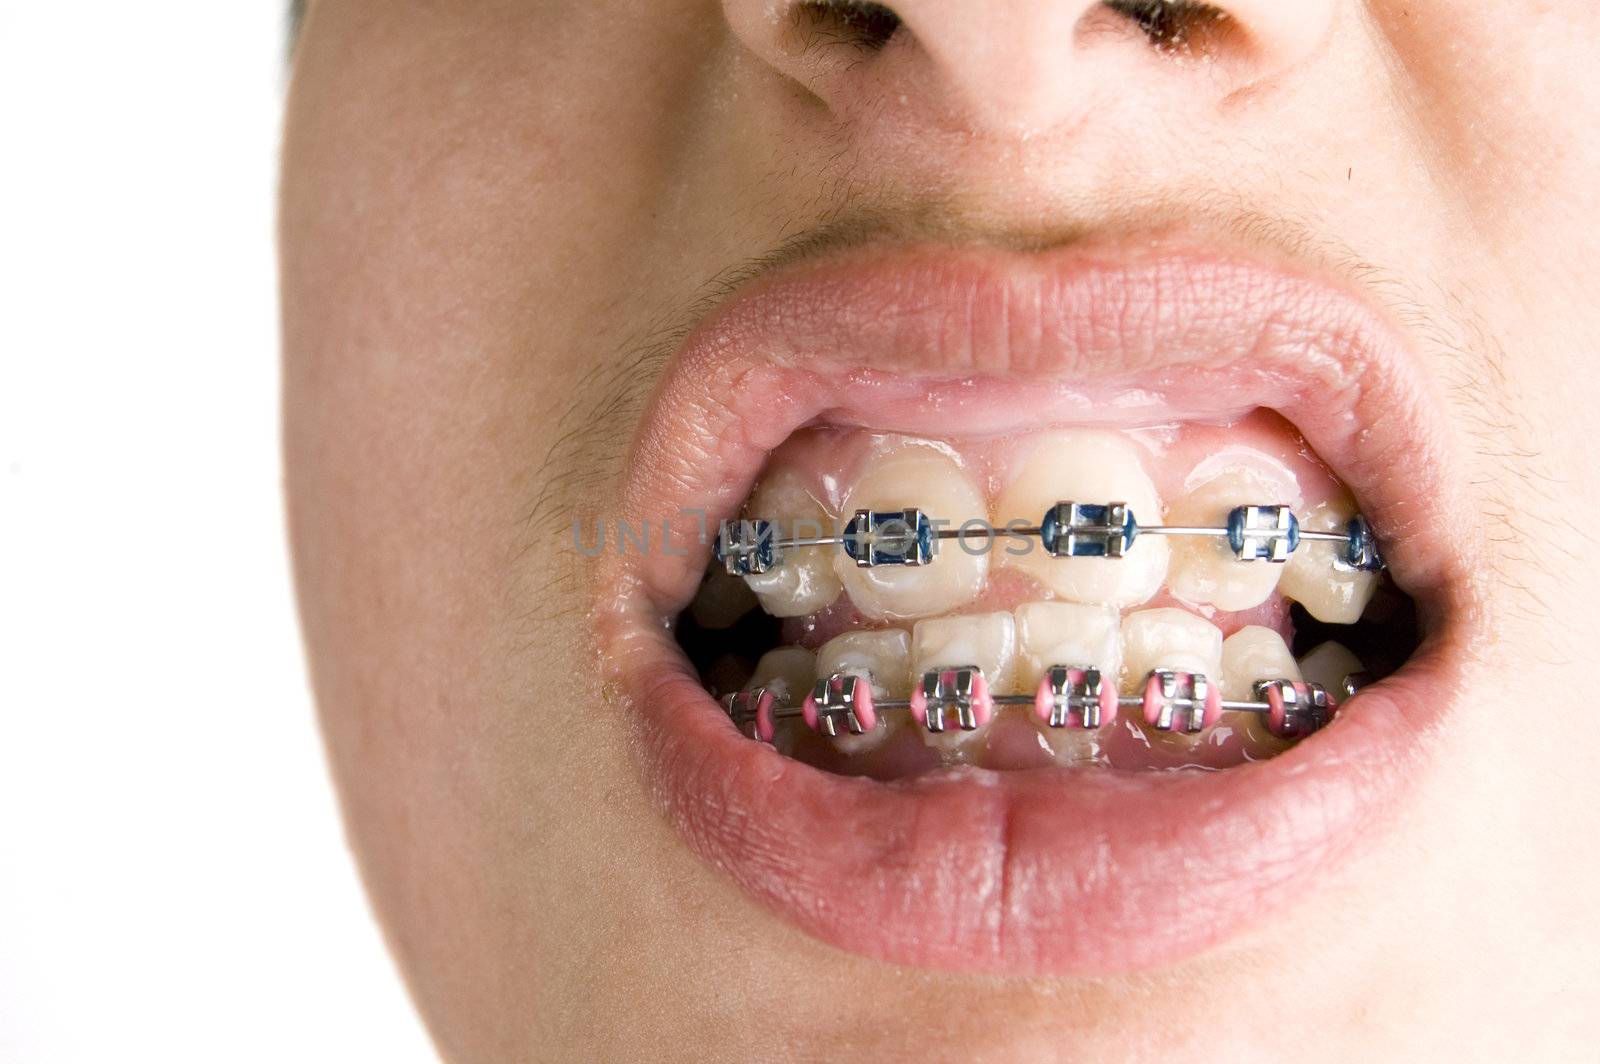 colourfull dental braces

